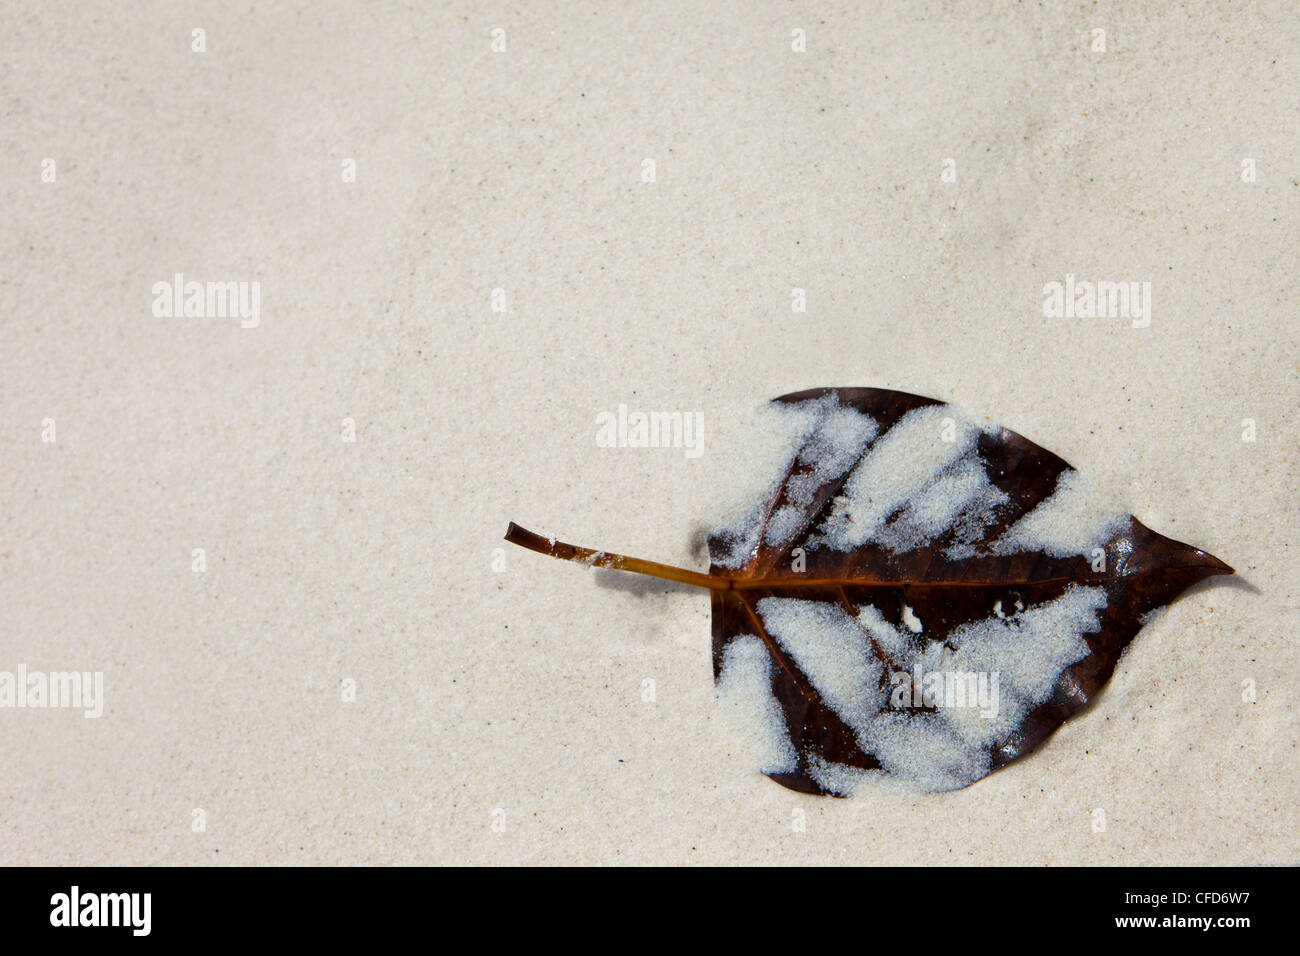 Angespült Blatt auf feinem weißen Sand, Similan Inseln, Andamanensee, Thailand Stockfoto